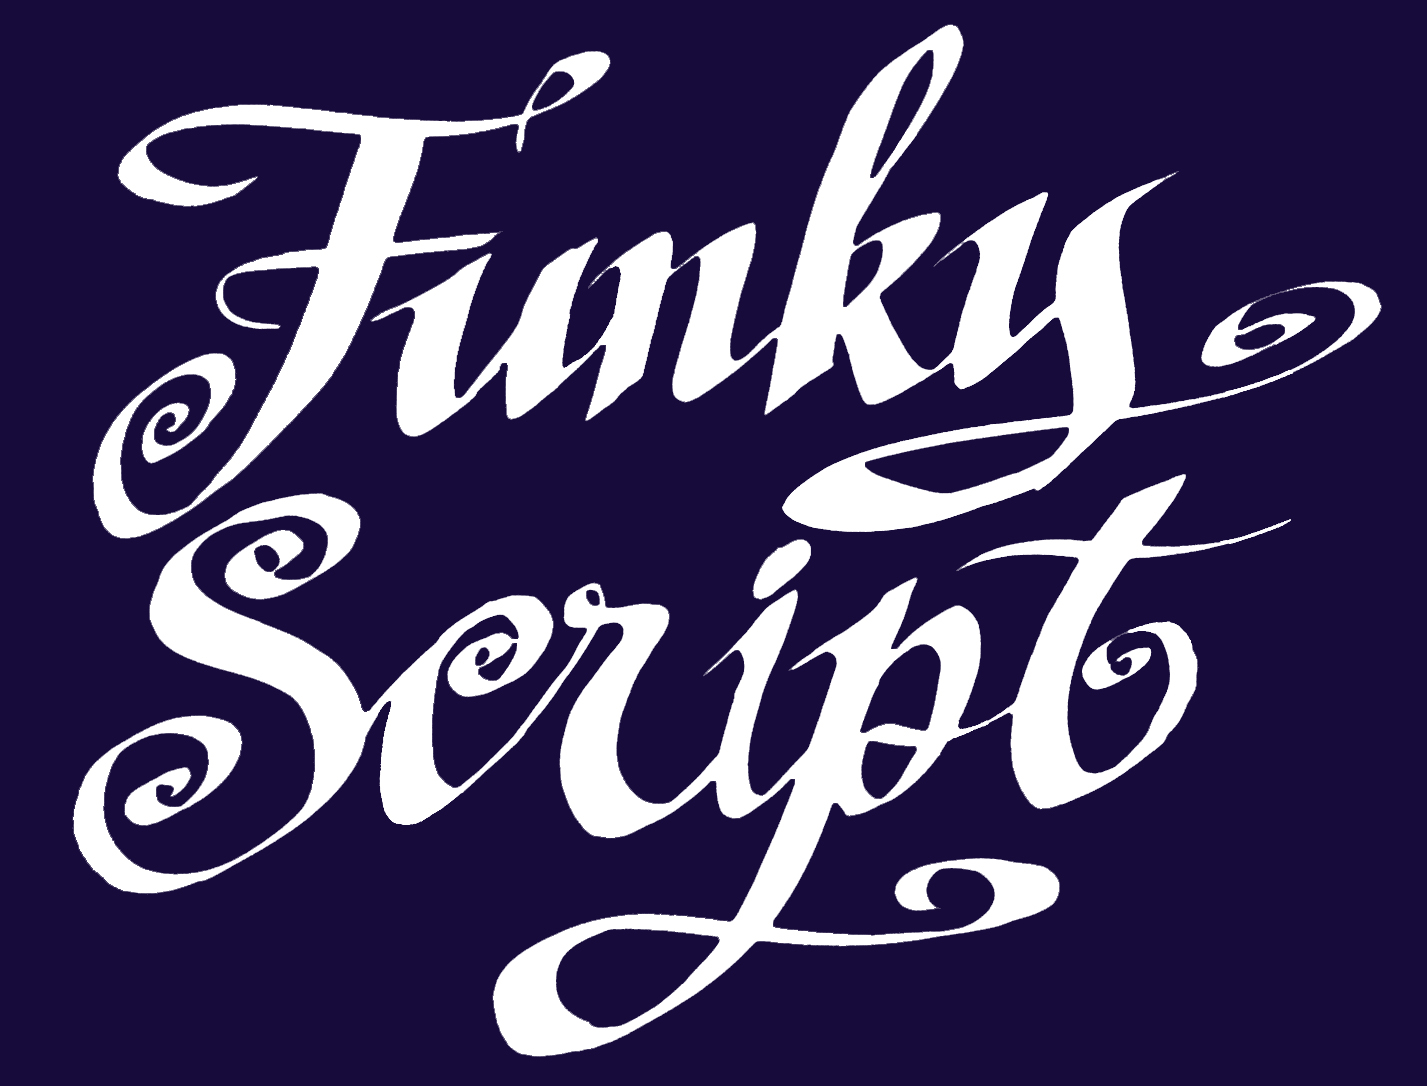 Funky Script